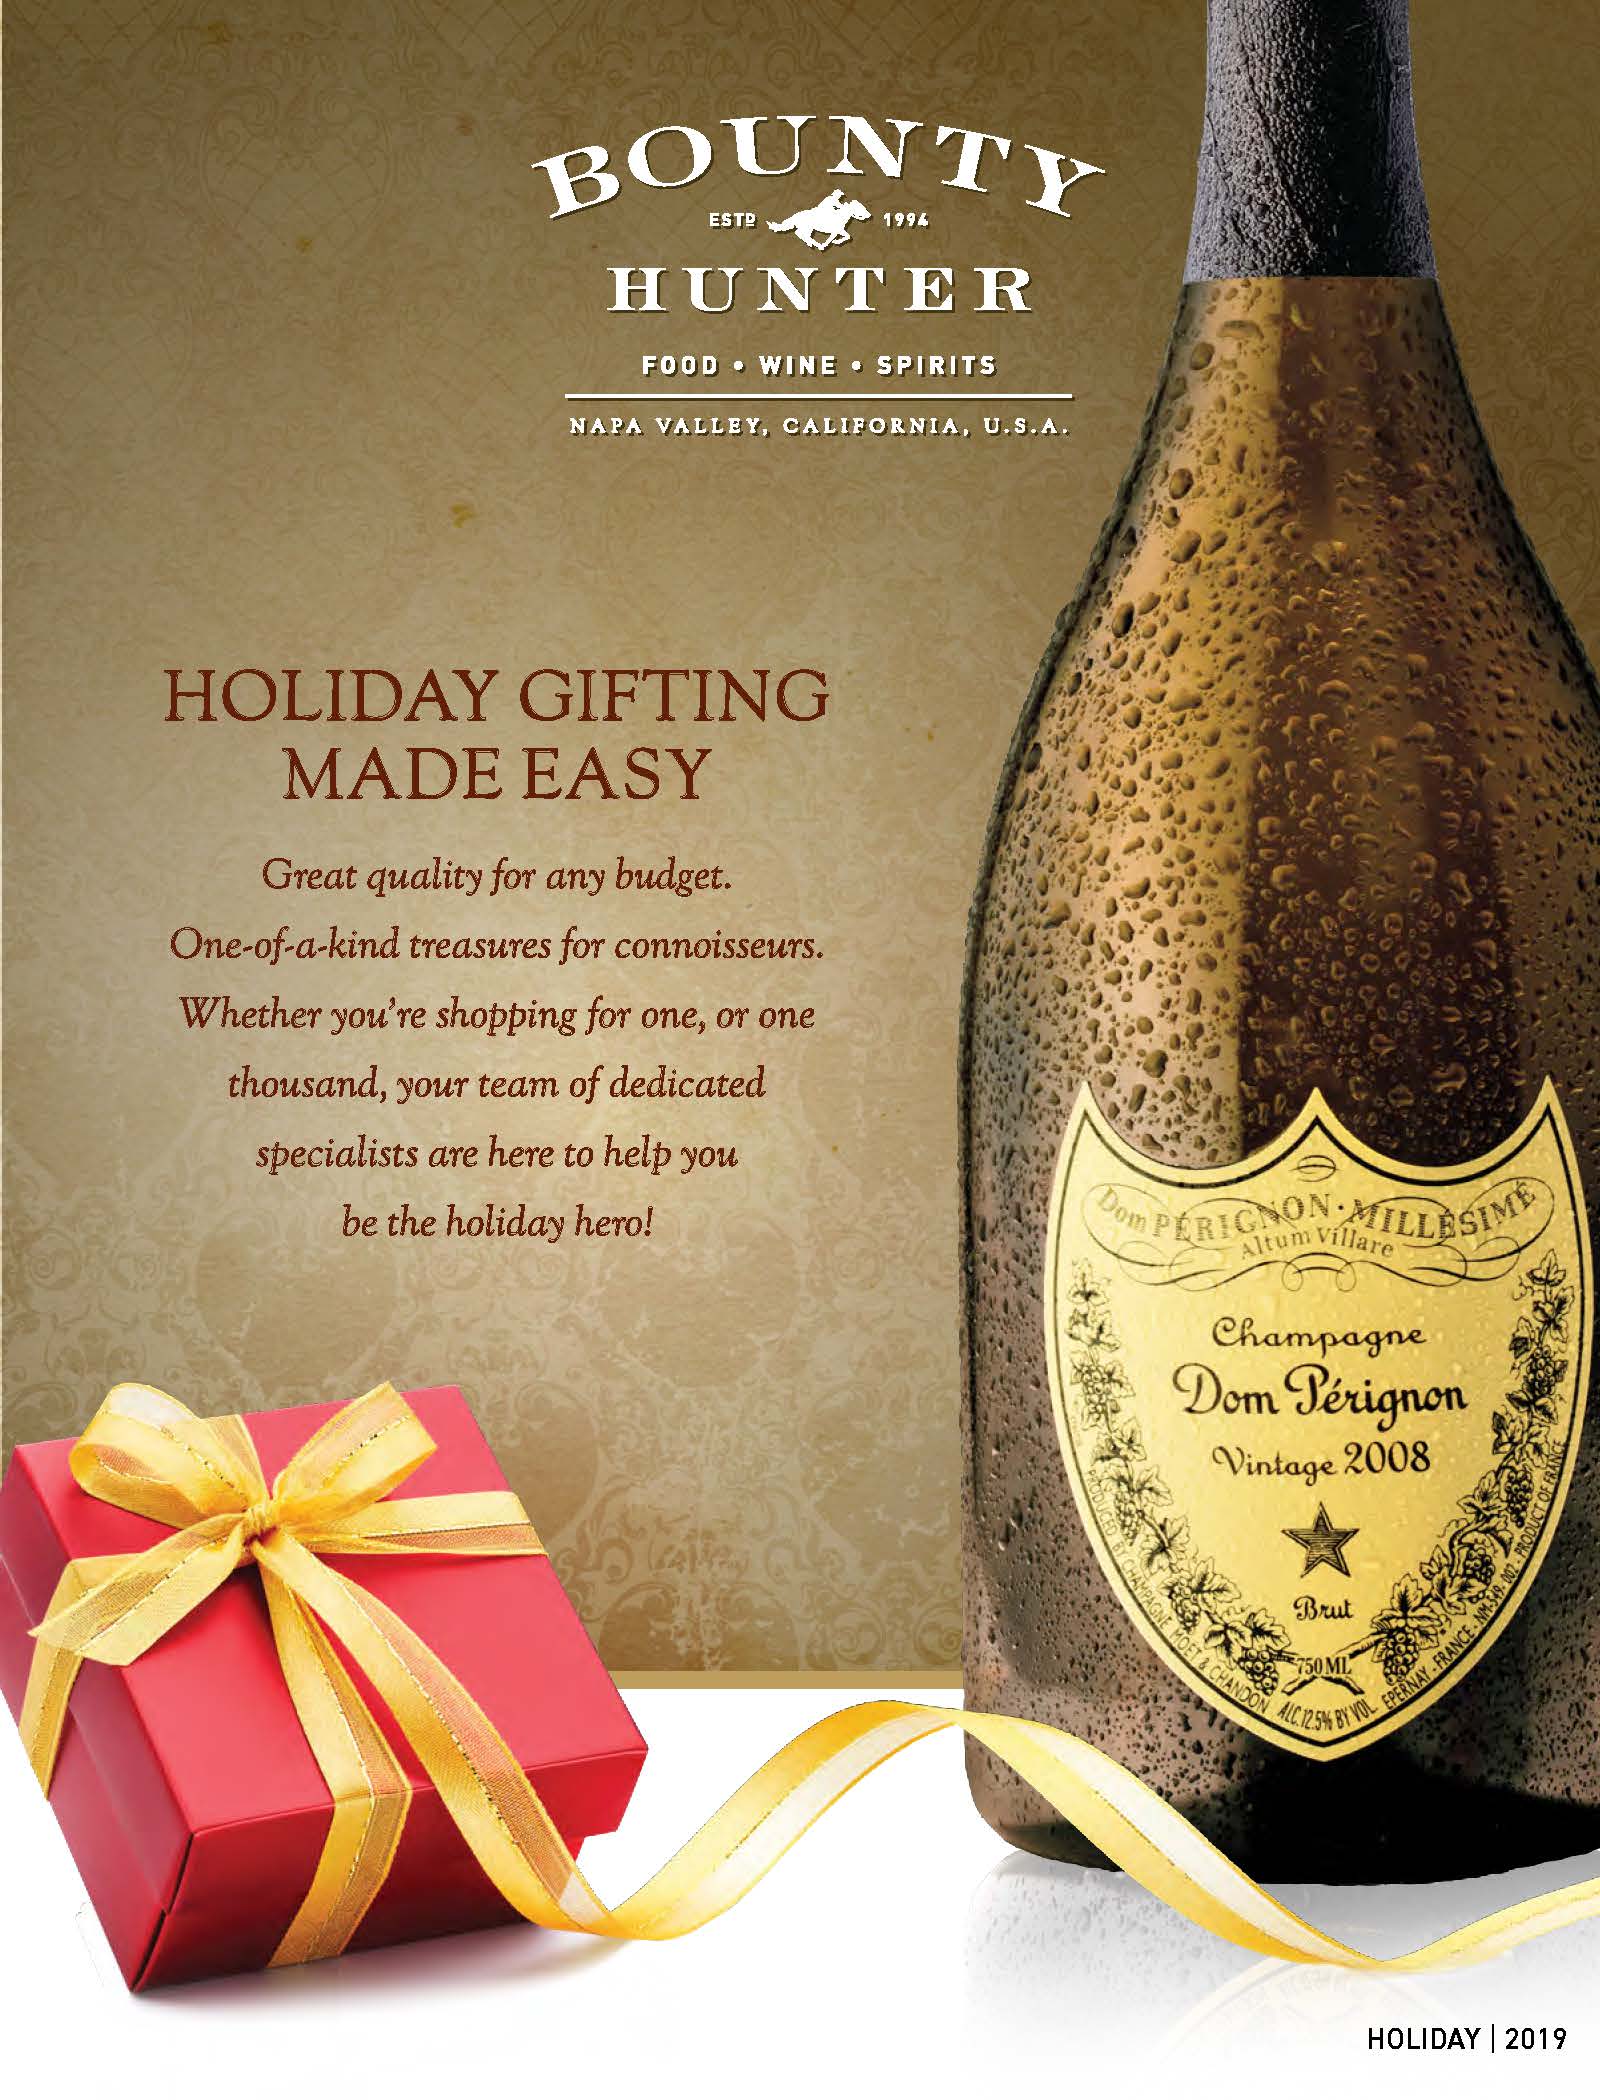 Bounty Hunter Rare Wine & Spirits Holiday 2019 Catalog